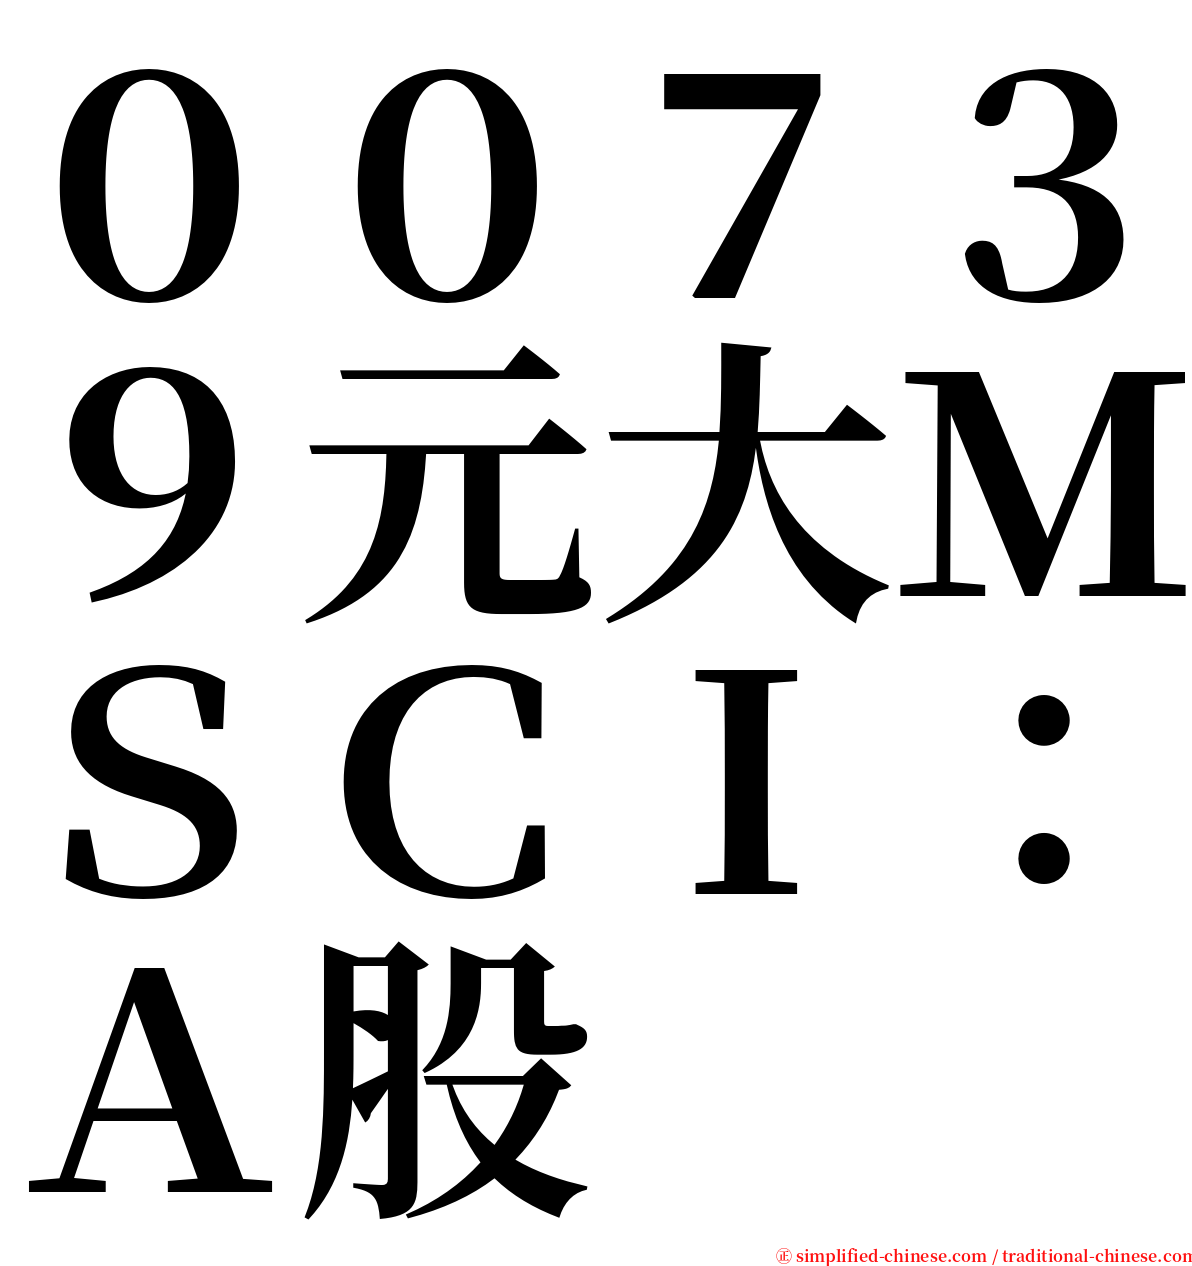 ００７３９元大ＭＳＣＩ：Ａ股 serif font